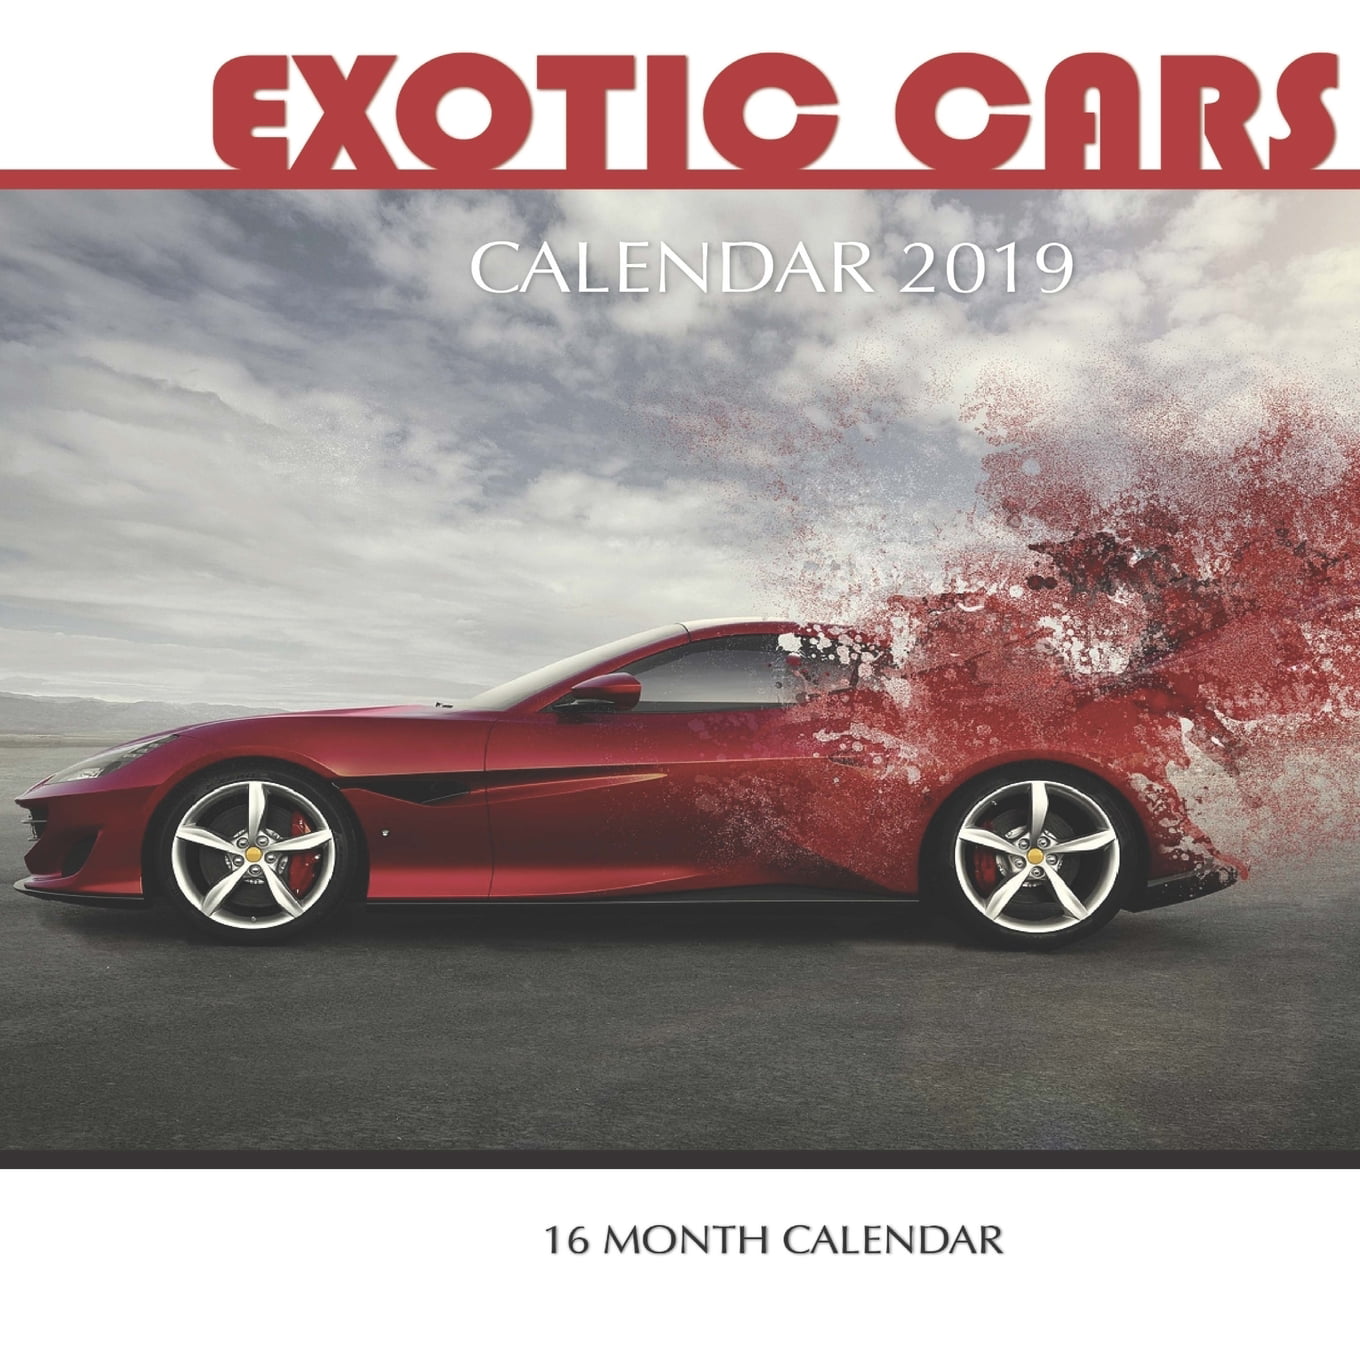 Exotic Cars Calendar 2019 16 Month Calendar Paperback Walmart Com